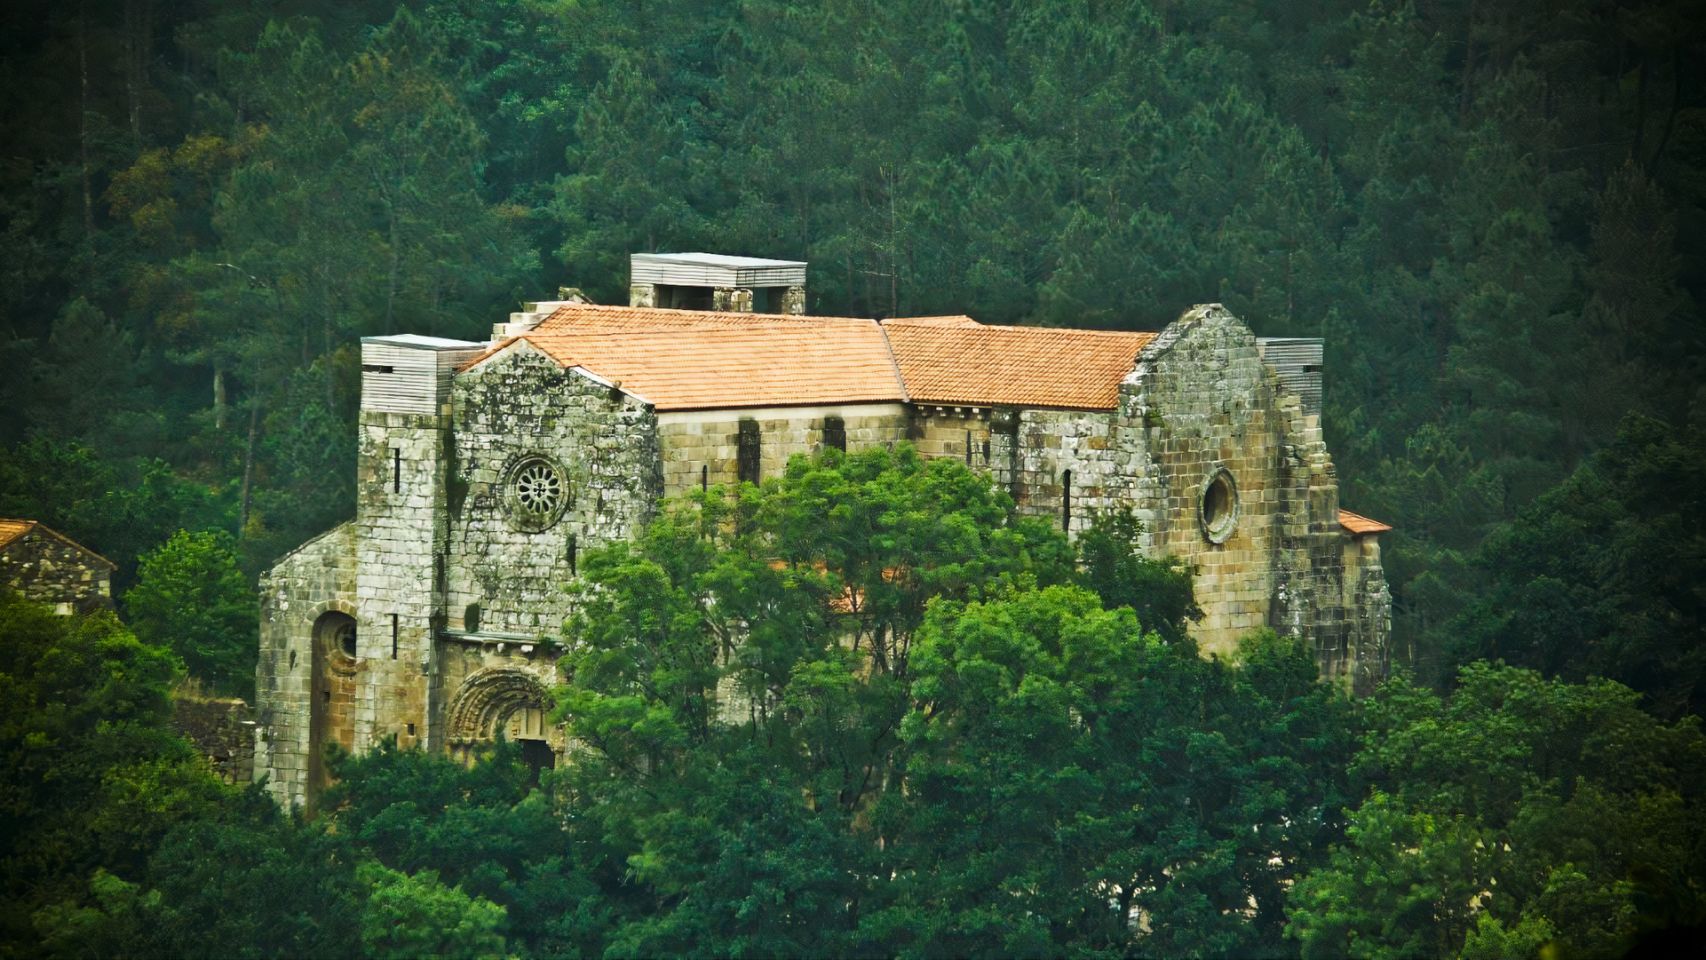 Monasterio de Carboeiro (Foto: Alma vía Wikimedia)